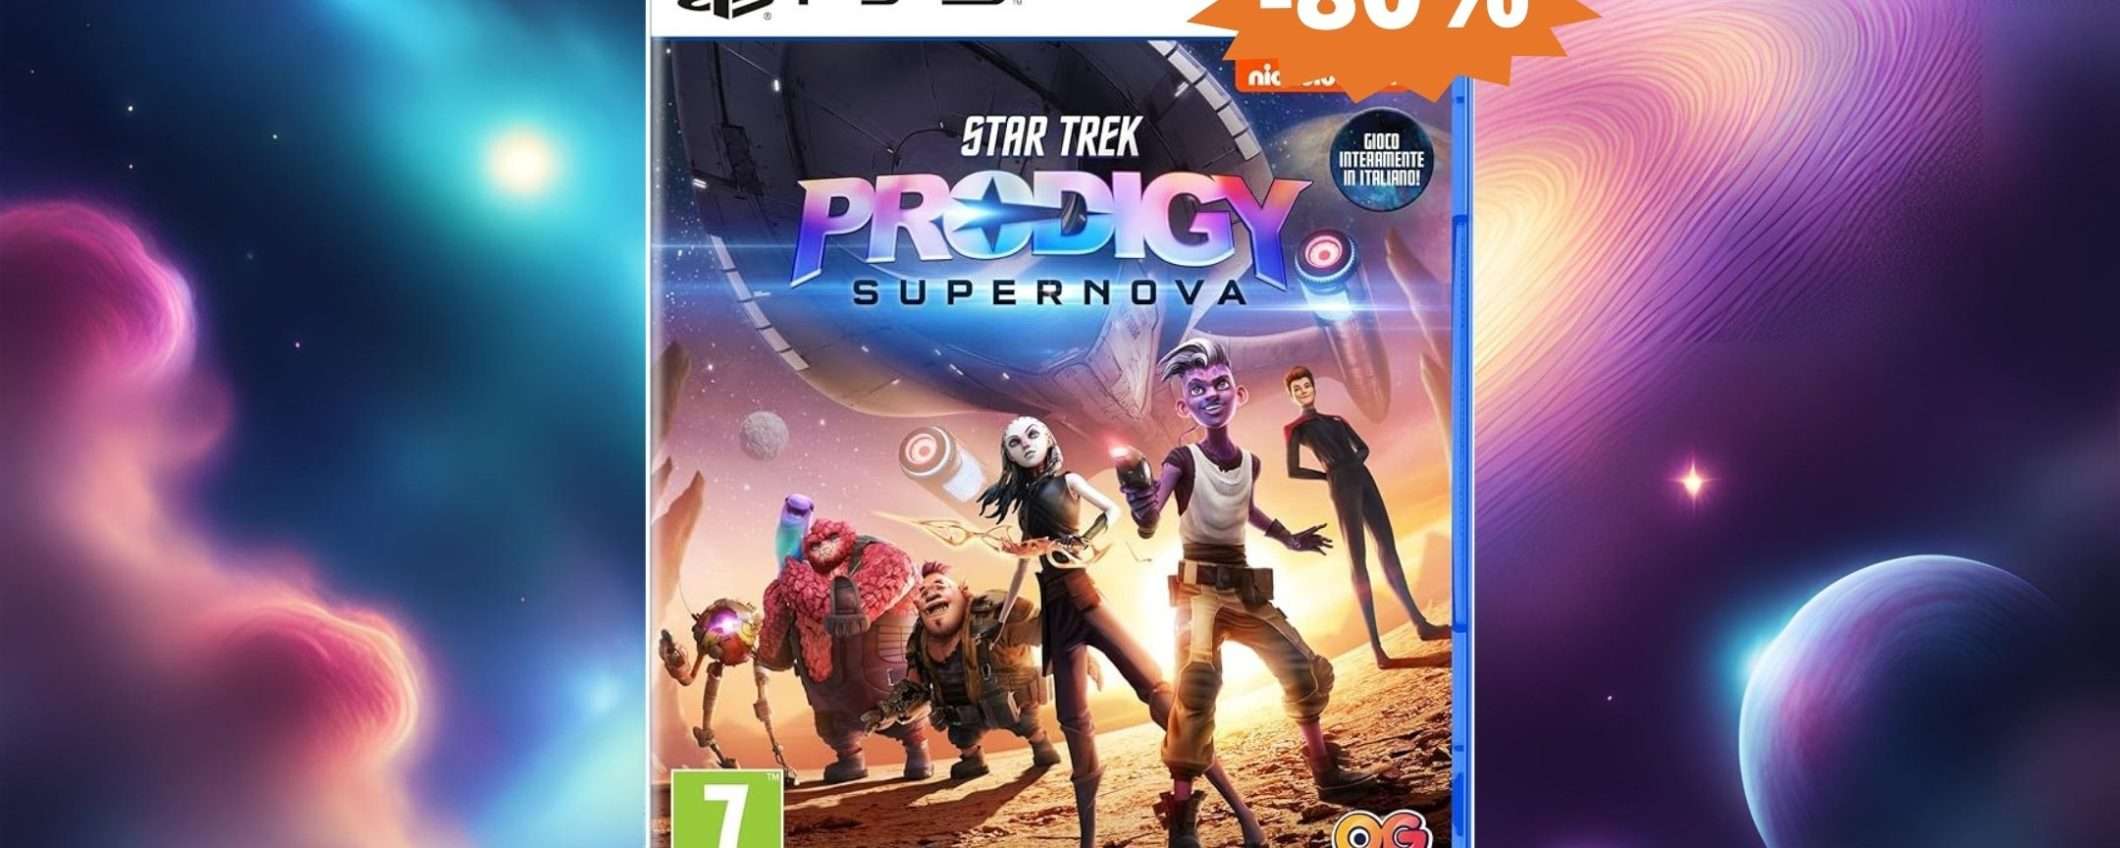 Star Trek Prodigy per PS5: sconto FOLLE del 80% su Amazon